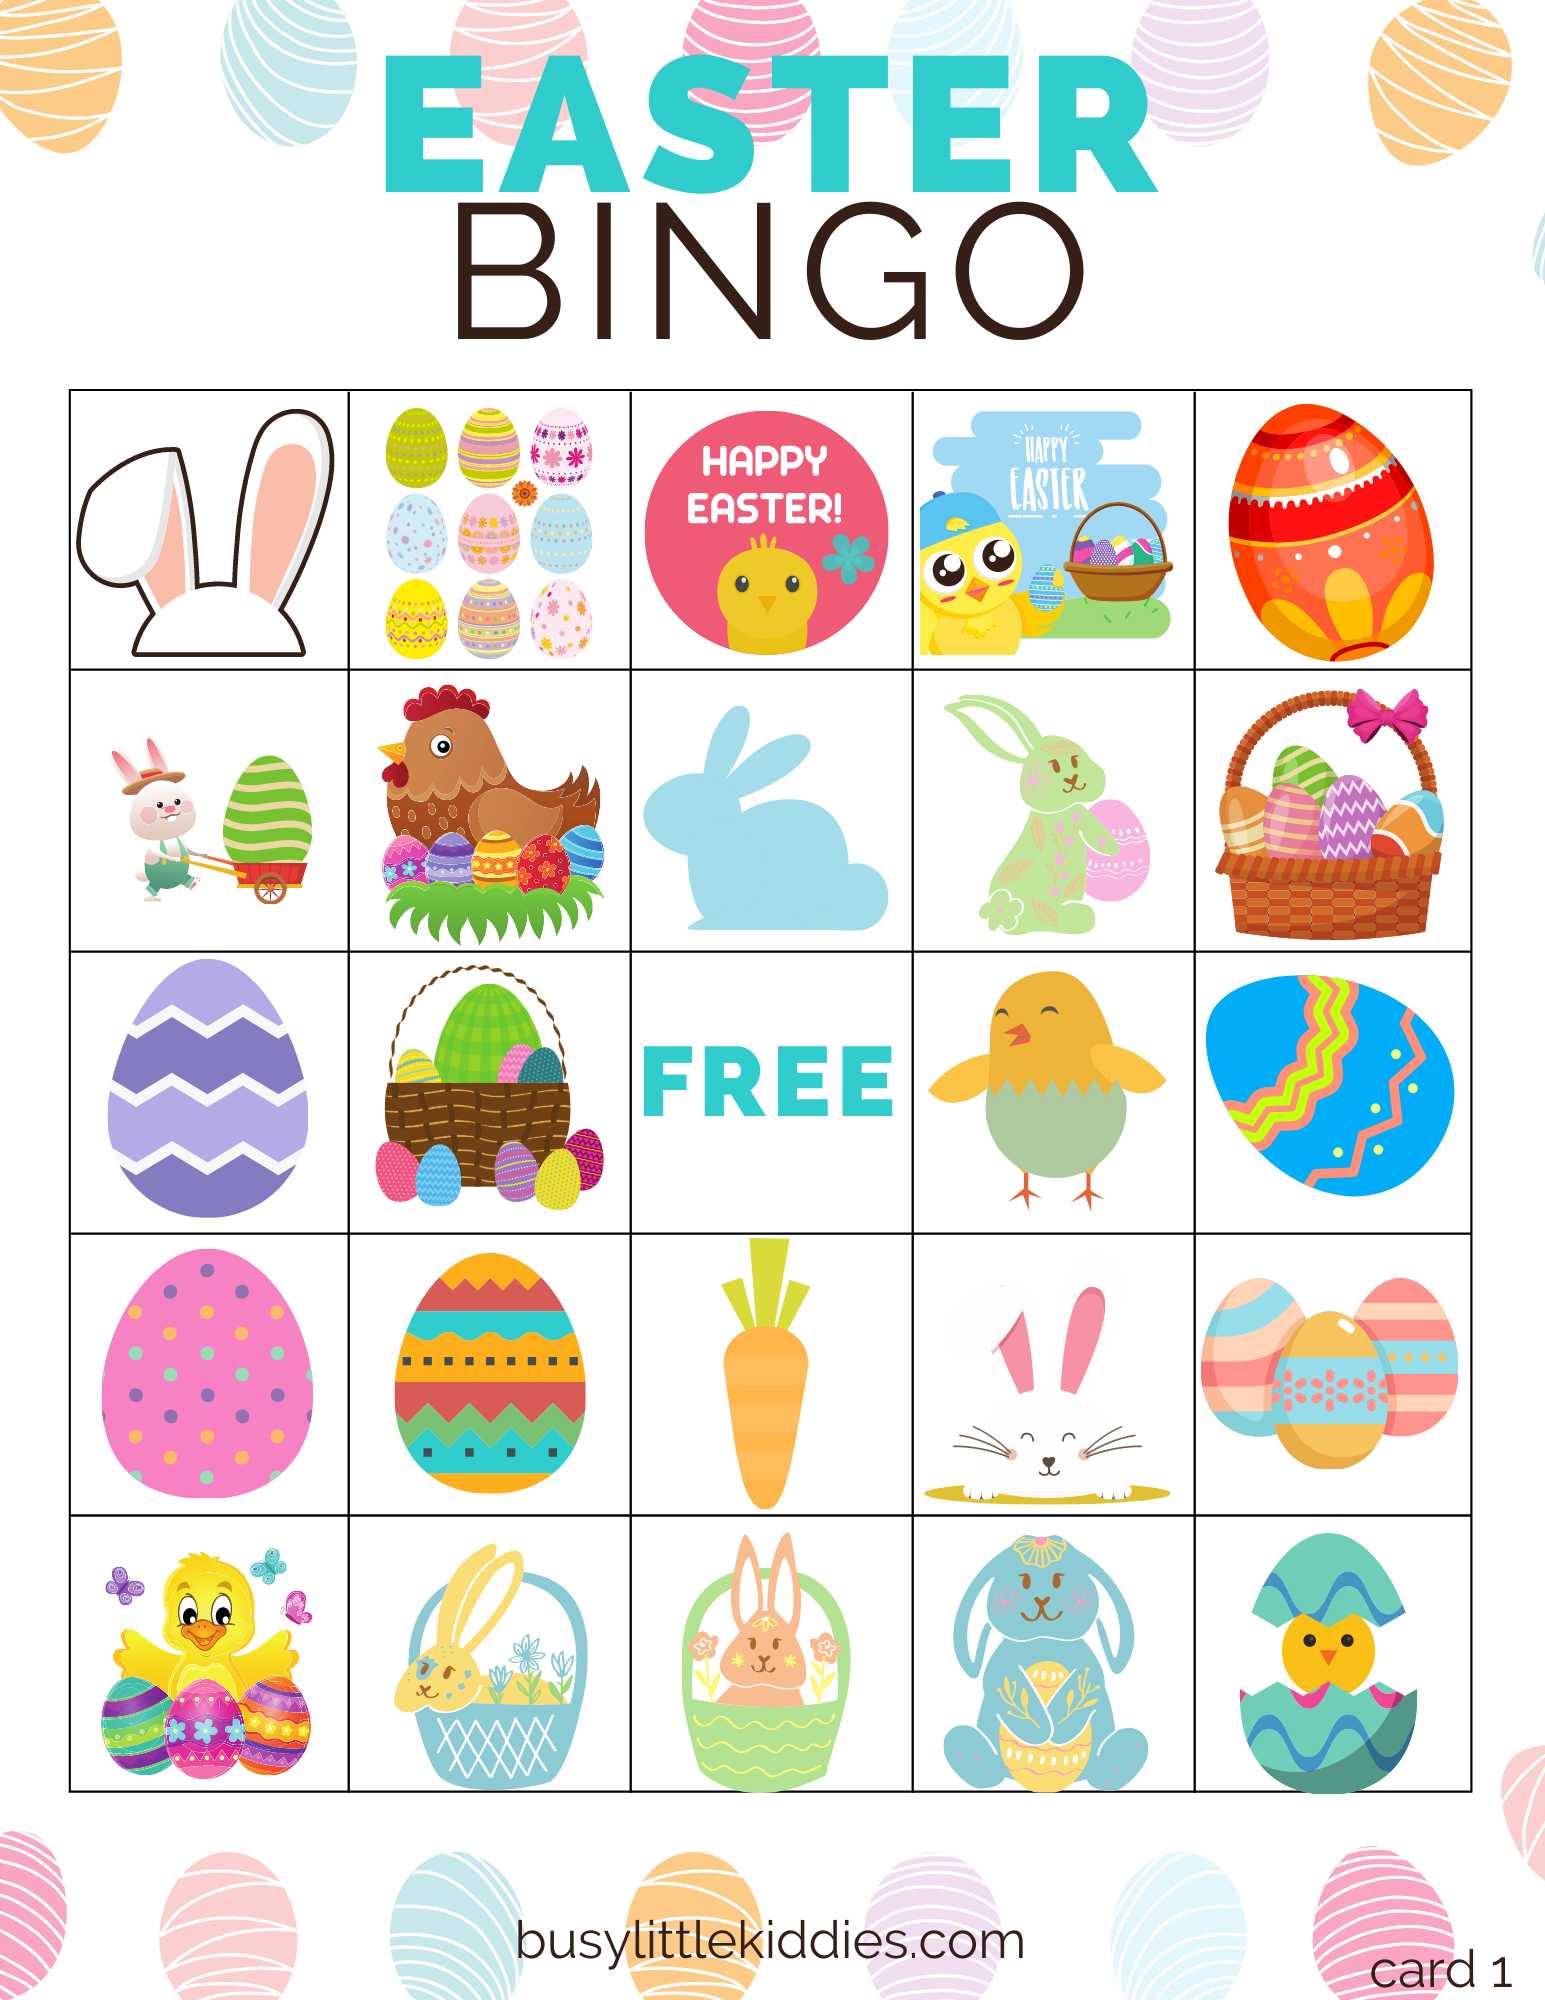 Easter bingo free printable 5 players